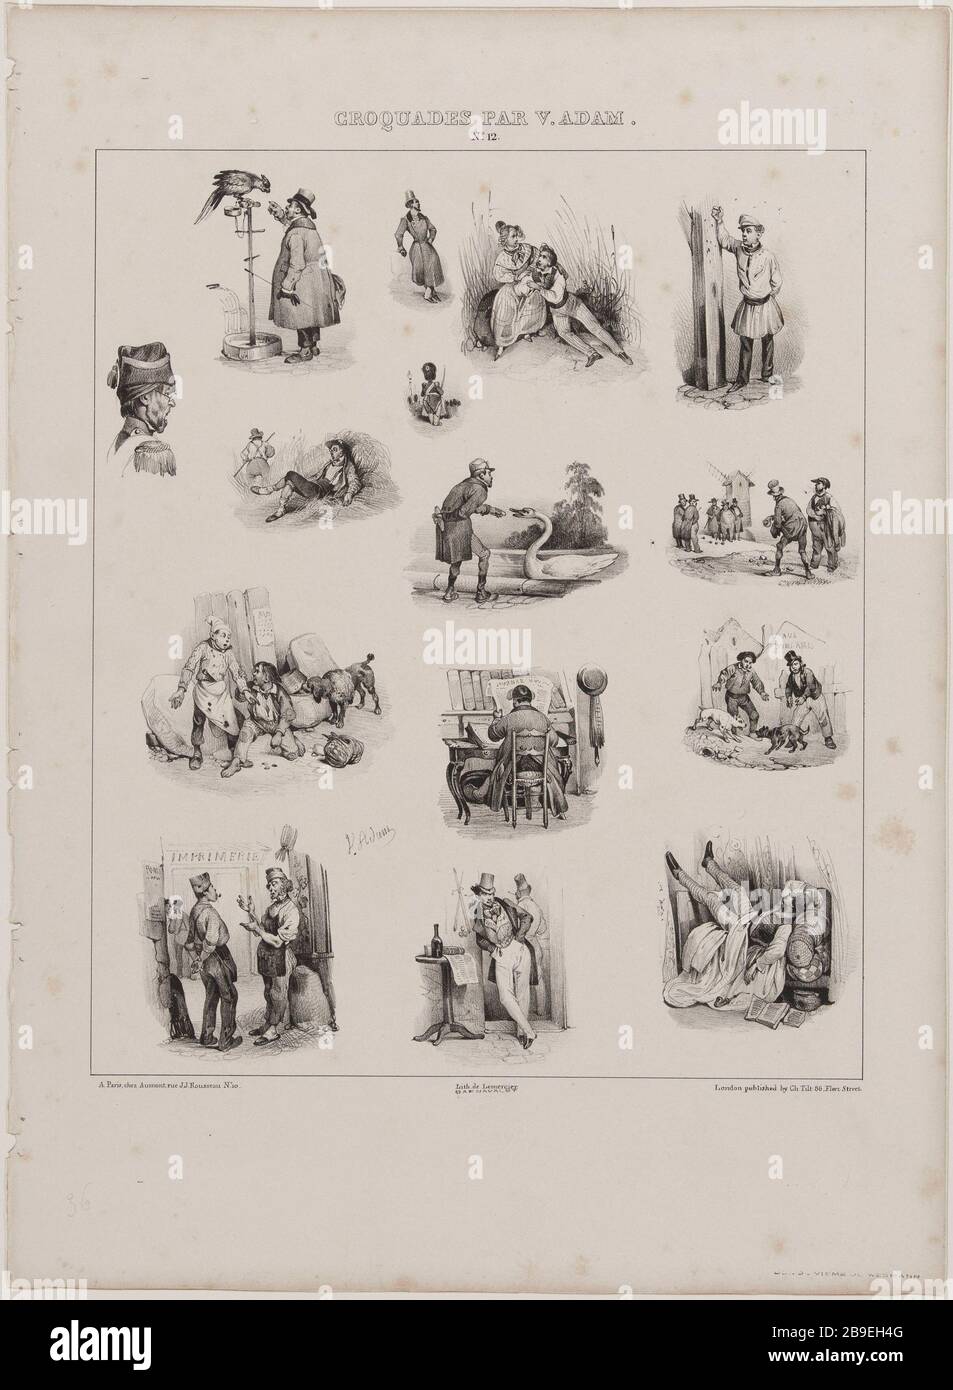 Croquades by V.Adam, No. 12 Jean-Victor Vincent Adam (1801-1866), peintre et lithographe français. Croquades, nº12. Lithographie, XIXème siècle. Paris, musée Carnavalet. Stock Photo